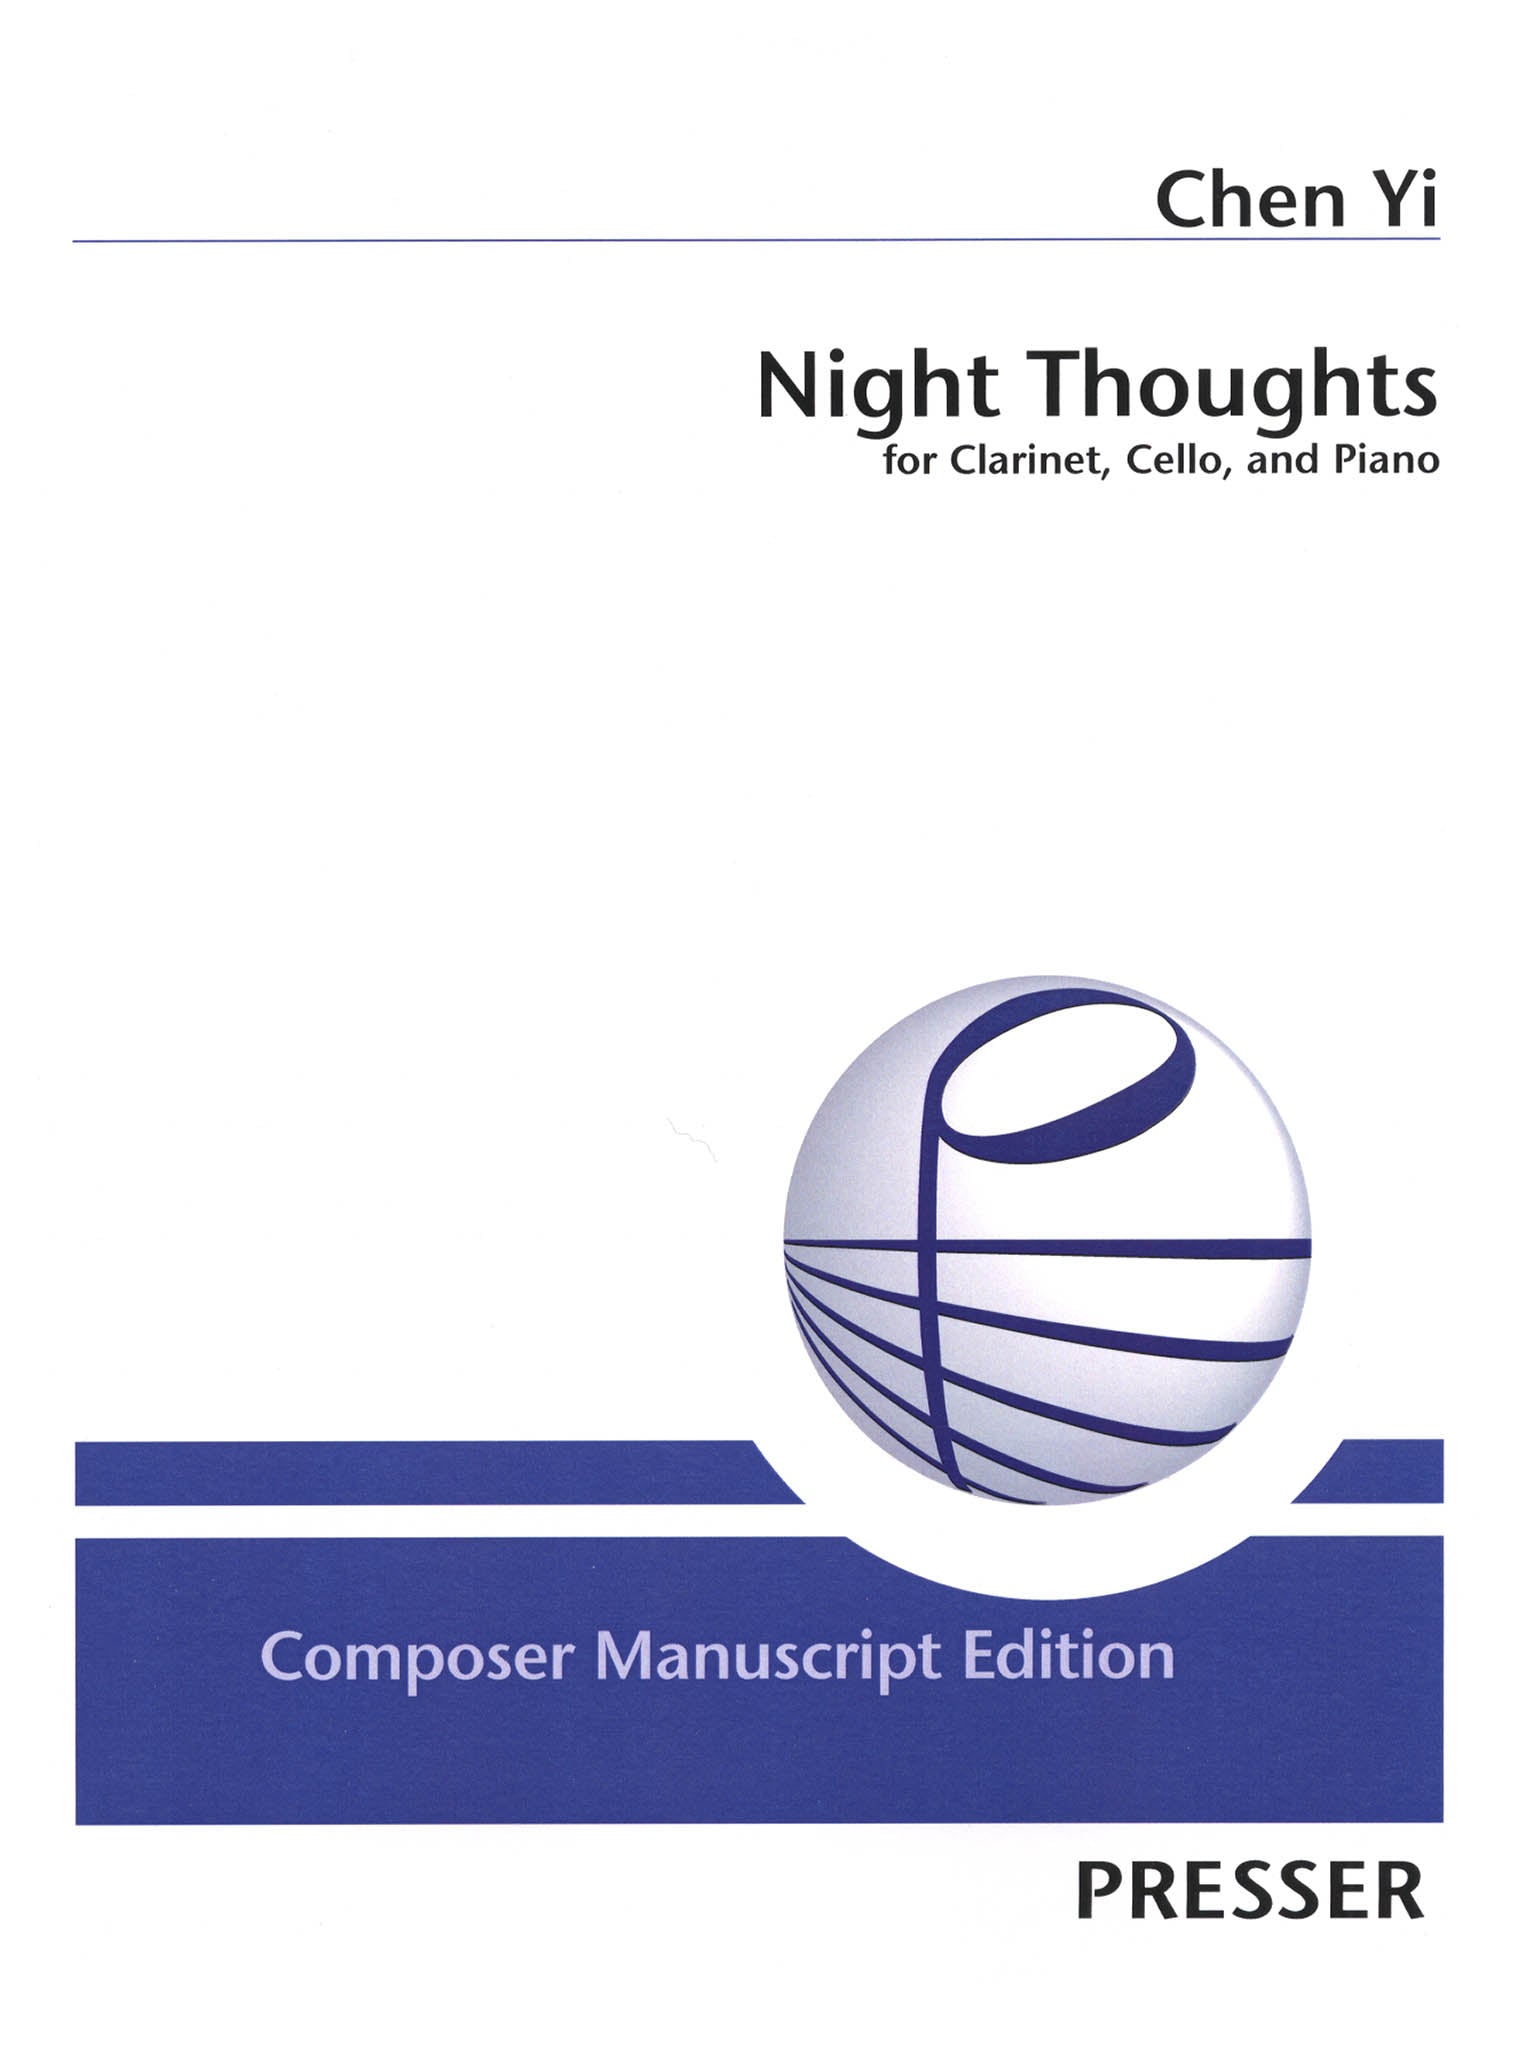 Chen Yi Night Thoughts clarinet cello piano trio cover